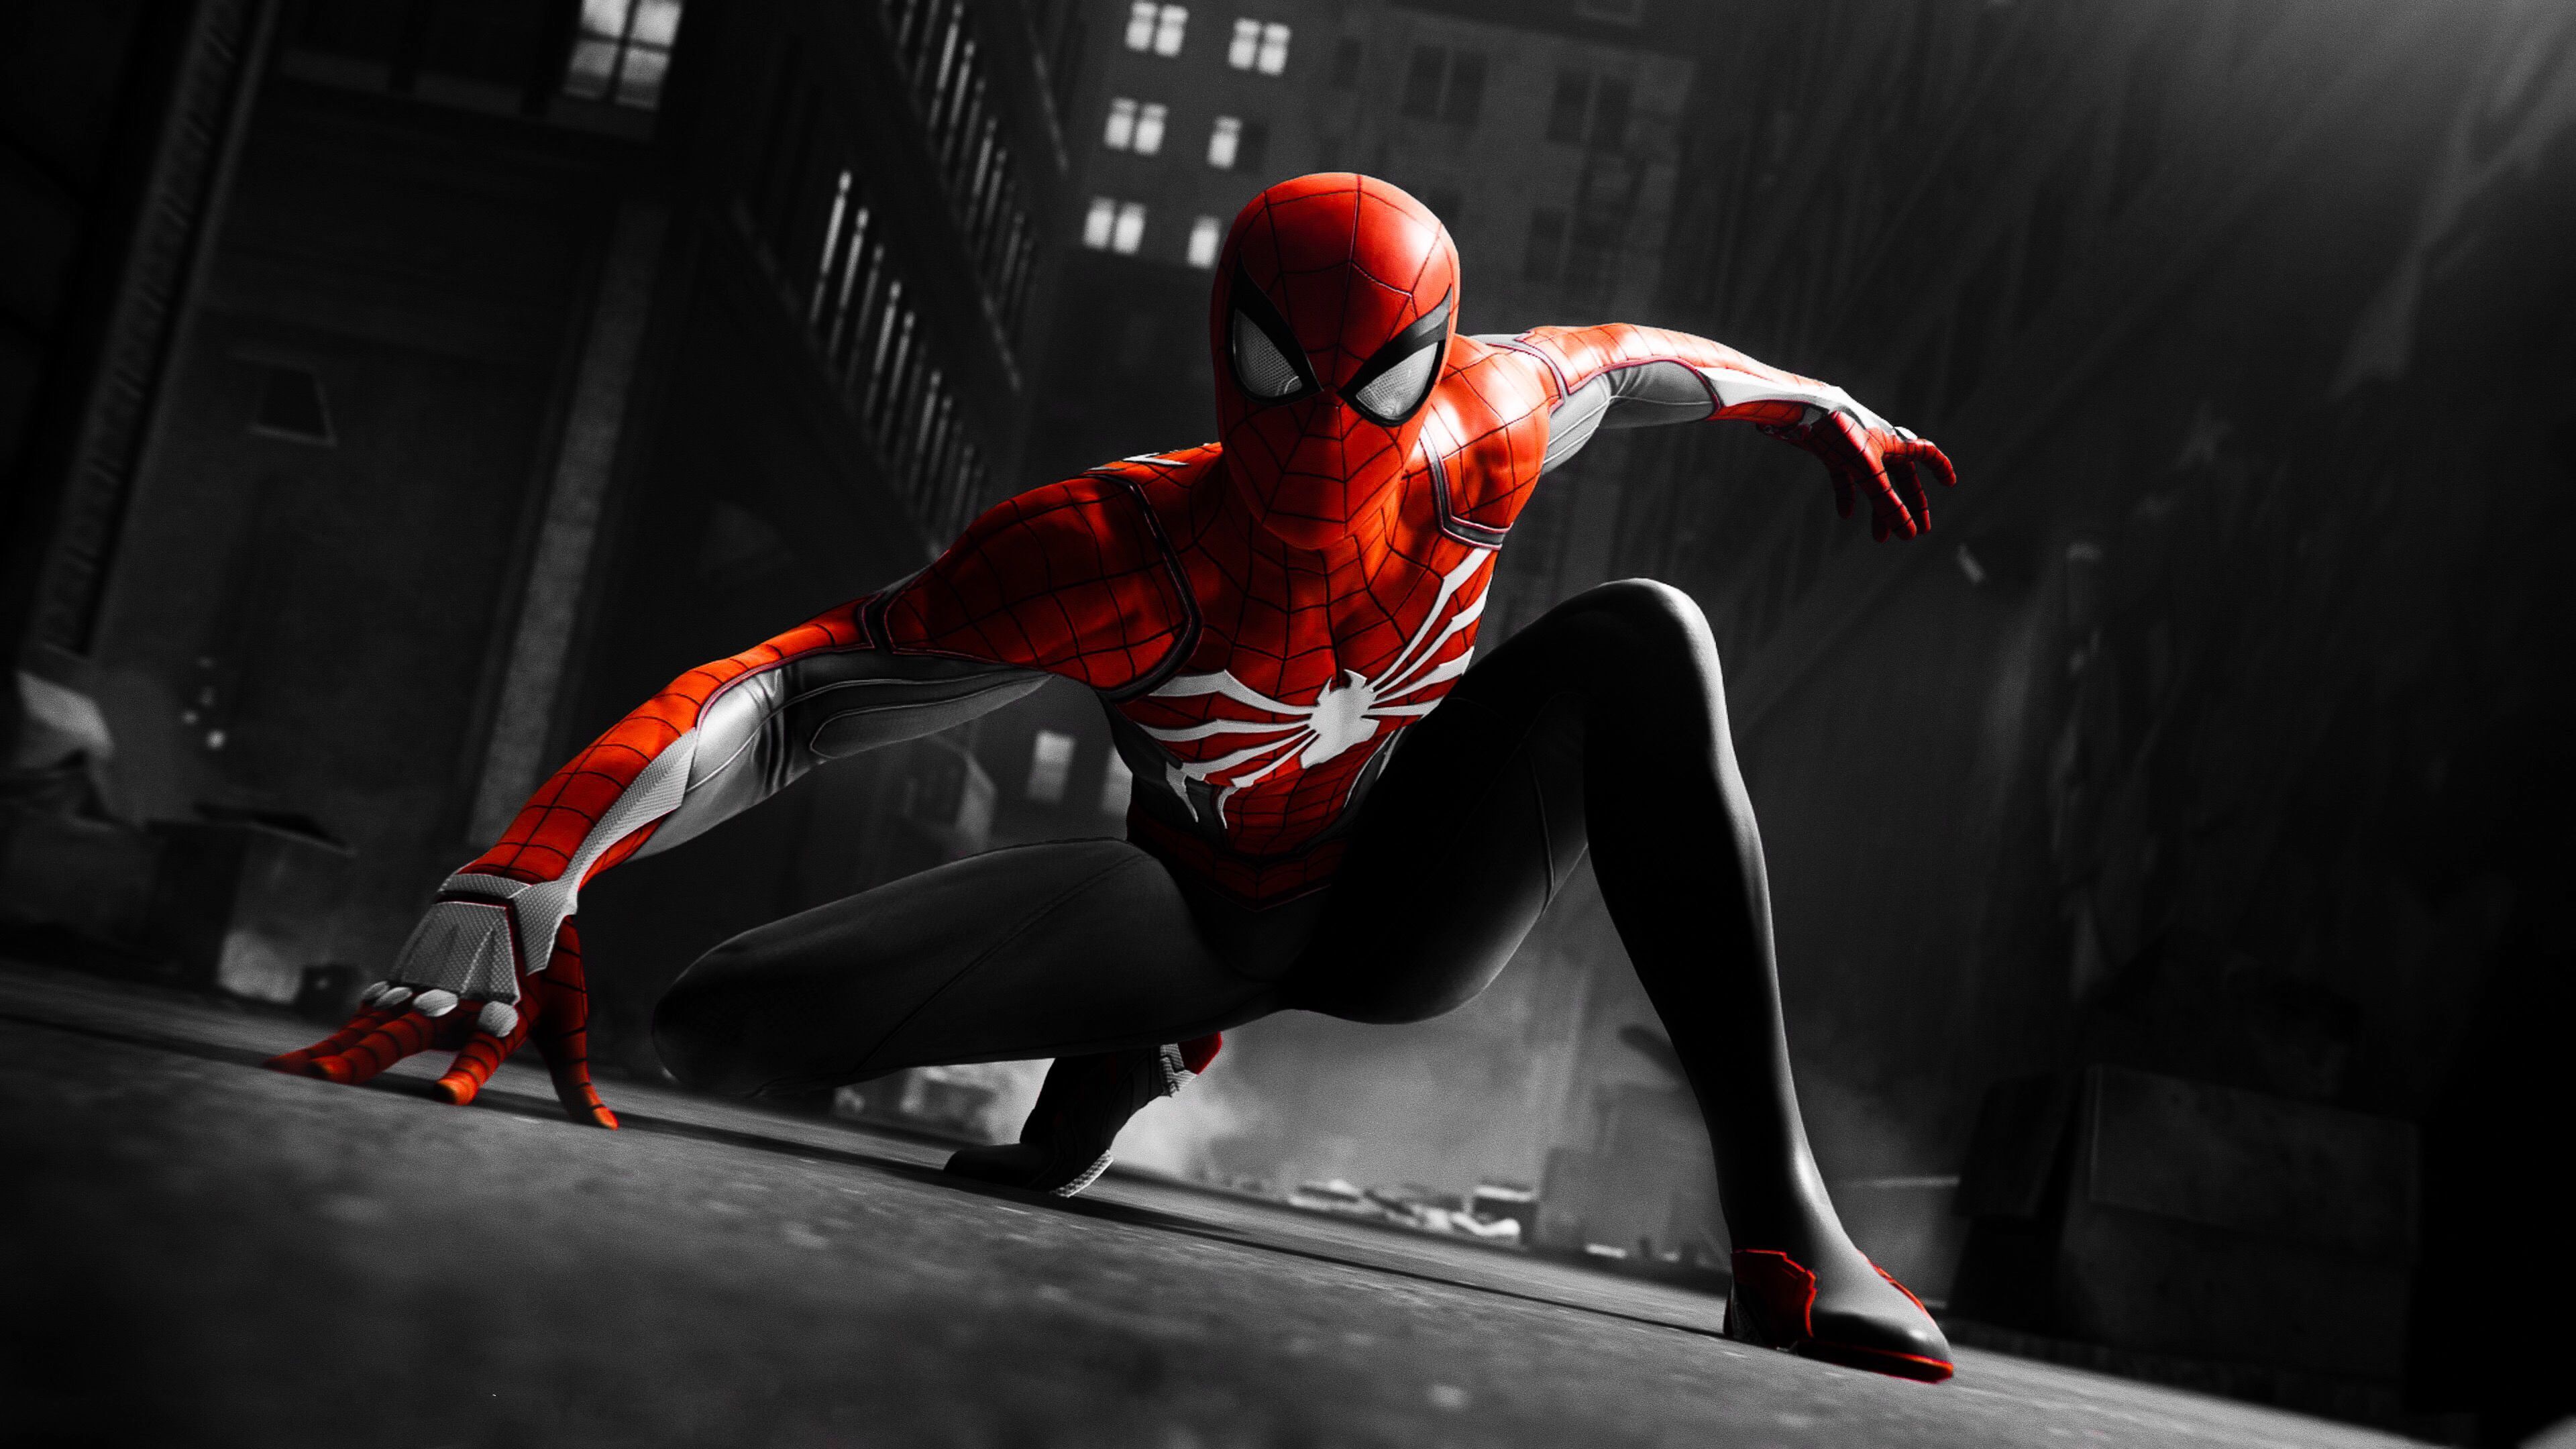 Spider-Man nền đen đỏ: Không chỉ vượt qua cái bóng của phiên bản cũ, Spider-Man nền đen đỏ còn làm say đắm lòng người với đường nét thiết kế tinh tế và màu sắc đậm chất siêu anh hùng. Để chứng tỏ tình yêu với người anh hùng nhện, hãy xem ngay hình ảnh liên quan đến từ khóa này và cùng trải nghiệm cảm giác trở thành siêu anh hùng giữa thành phố đầy thử thách!